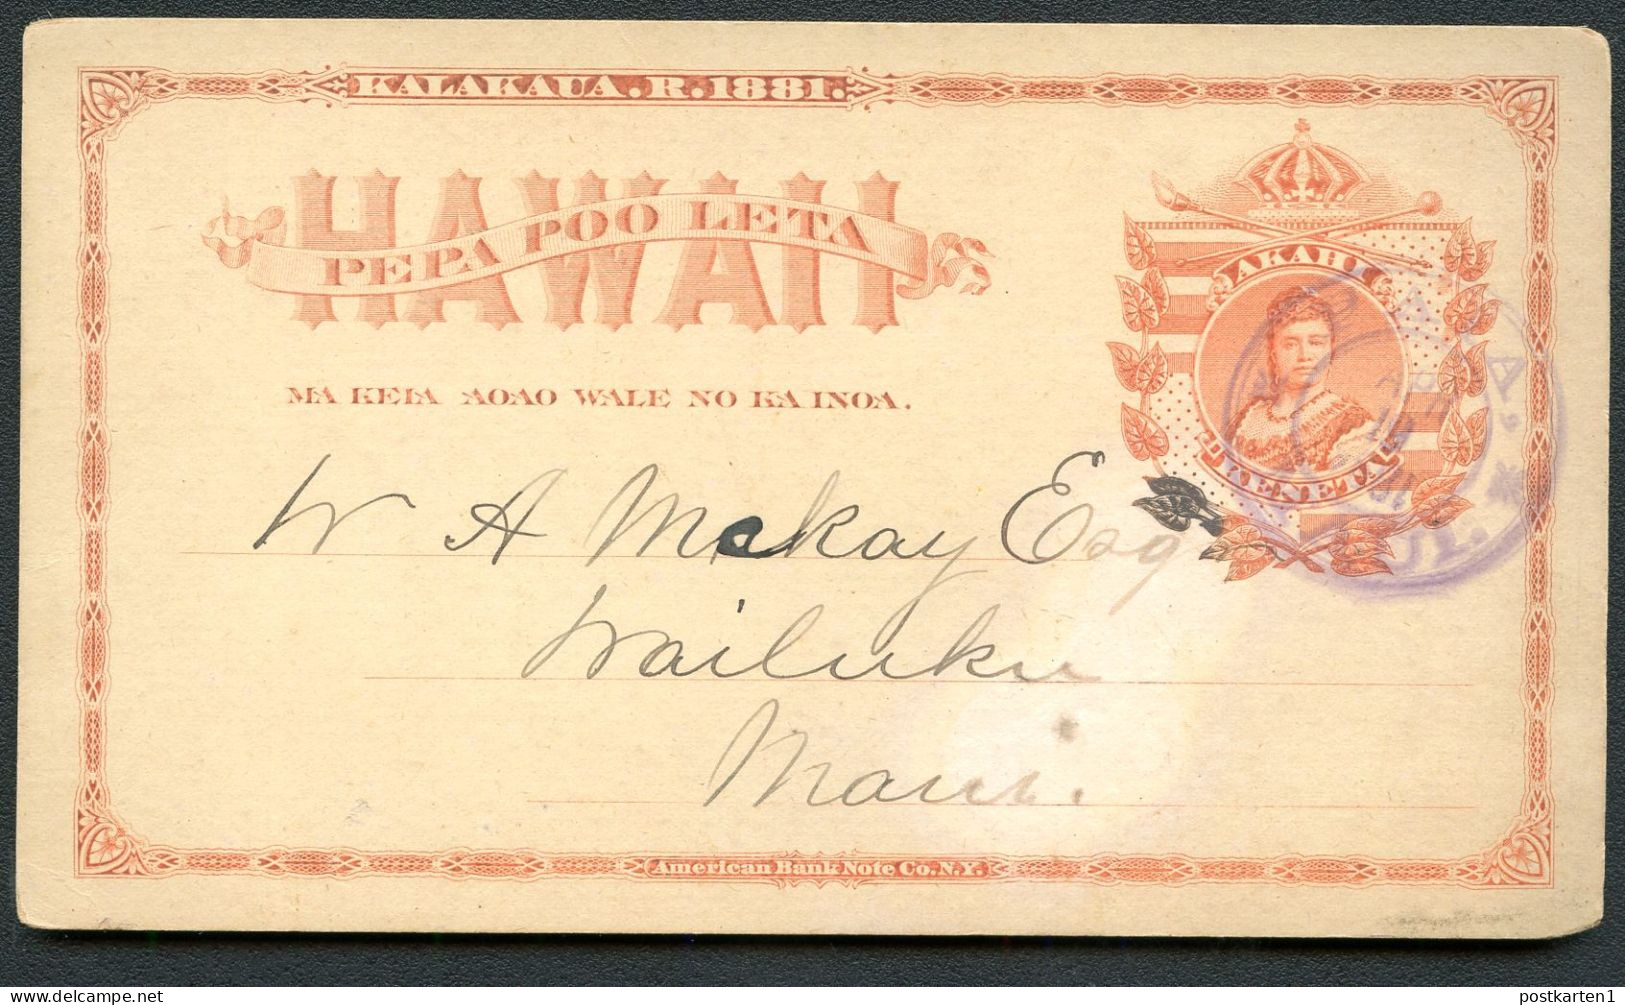 Hawaii Postal Card UX1 Paia Maui YEAR INVERTED - Wailuku Maui 1894 - Hawaii